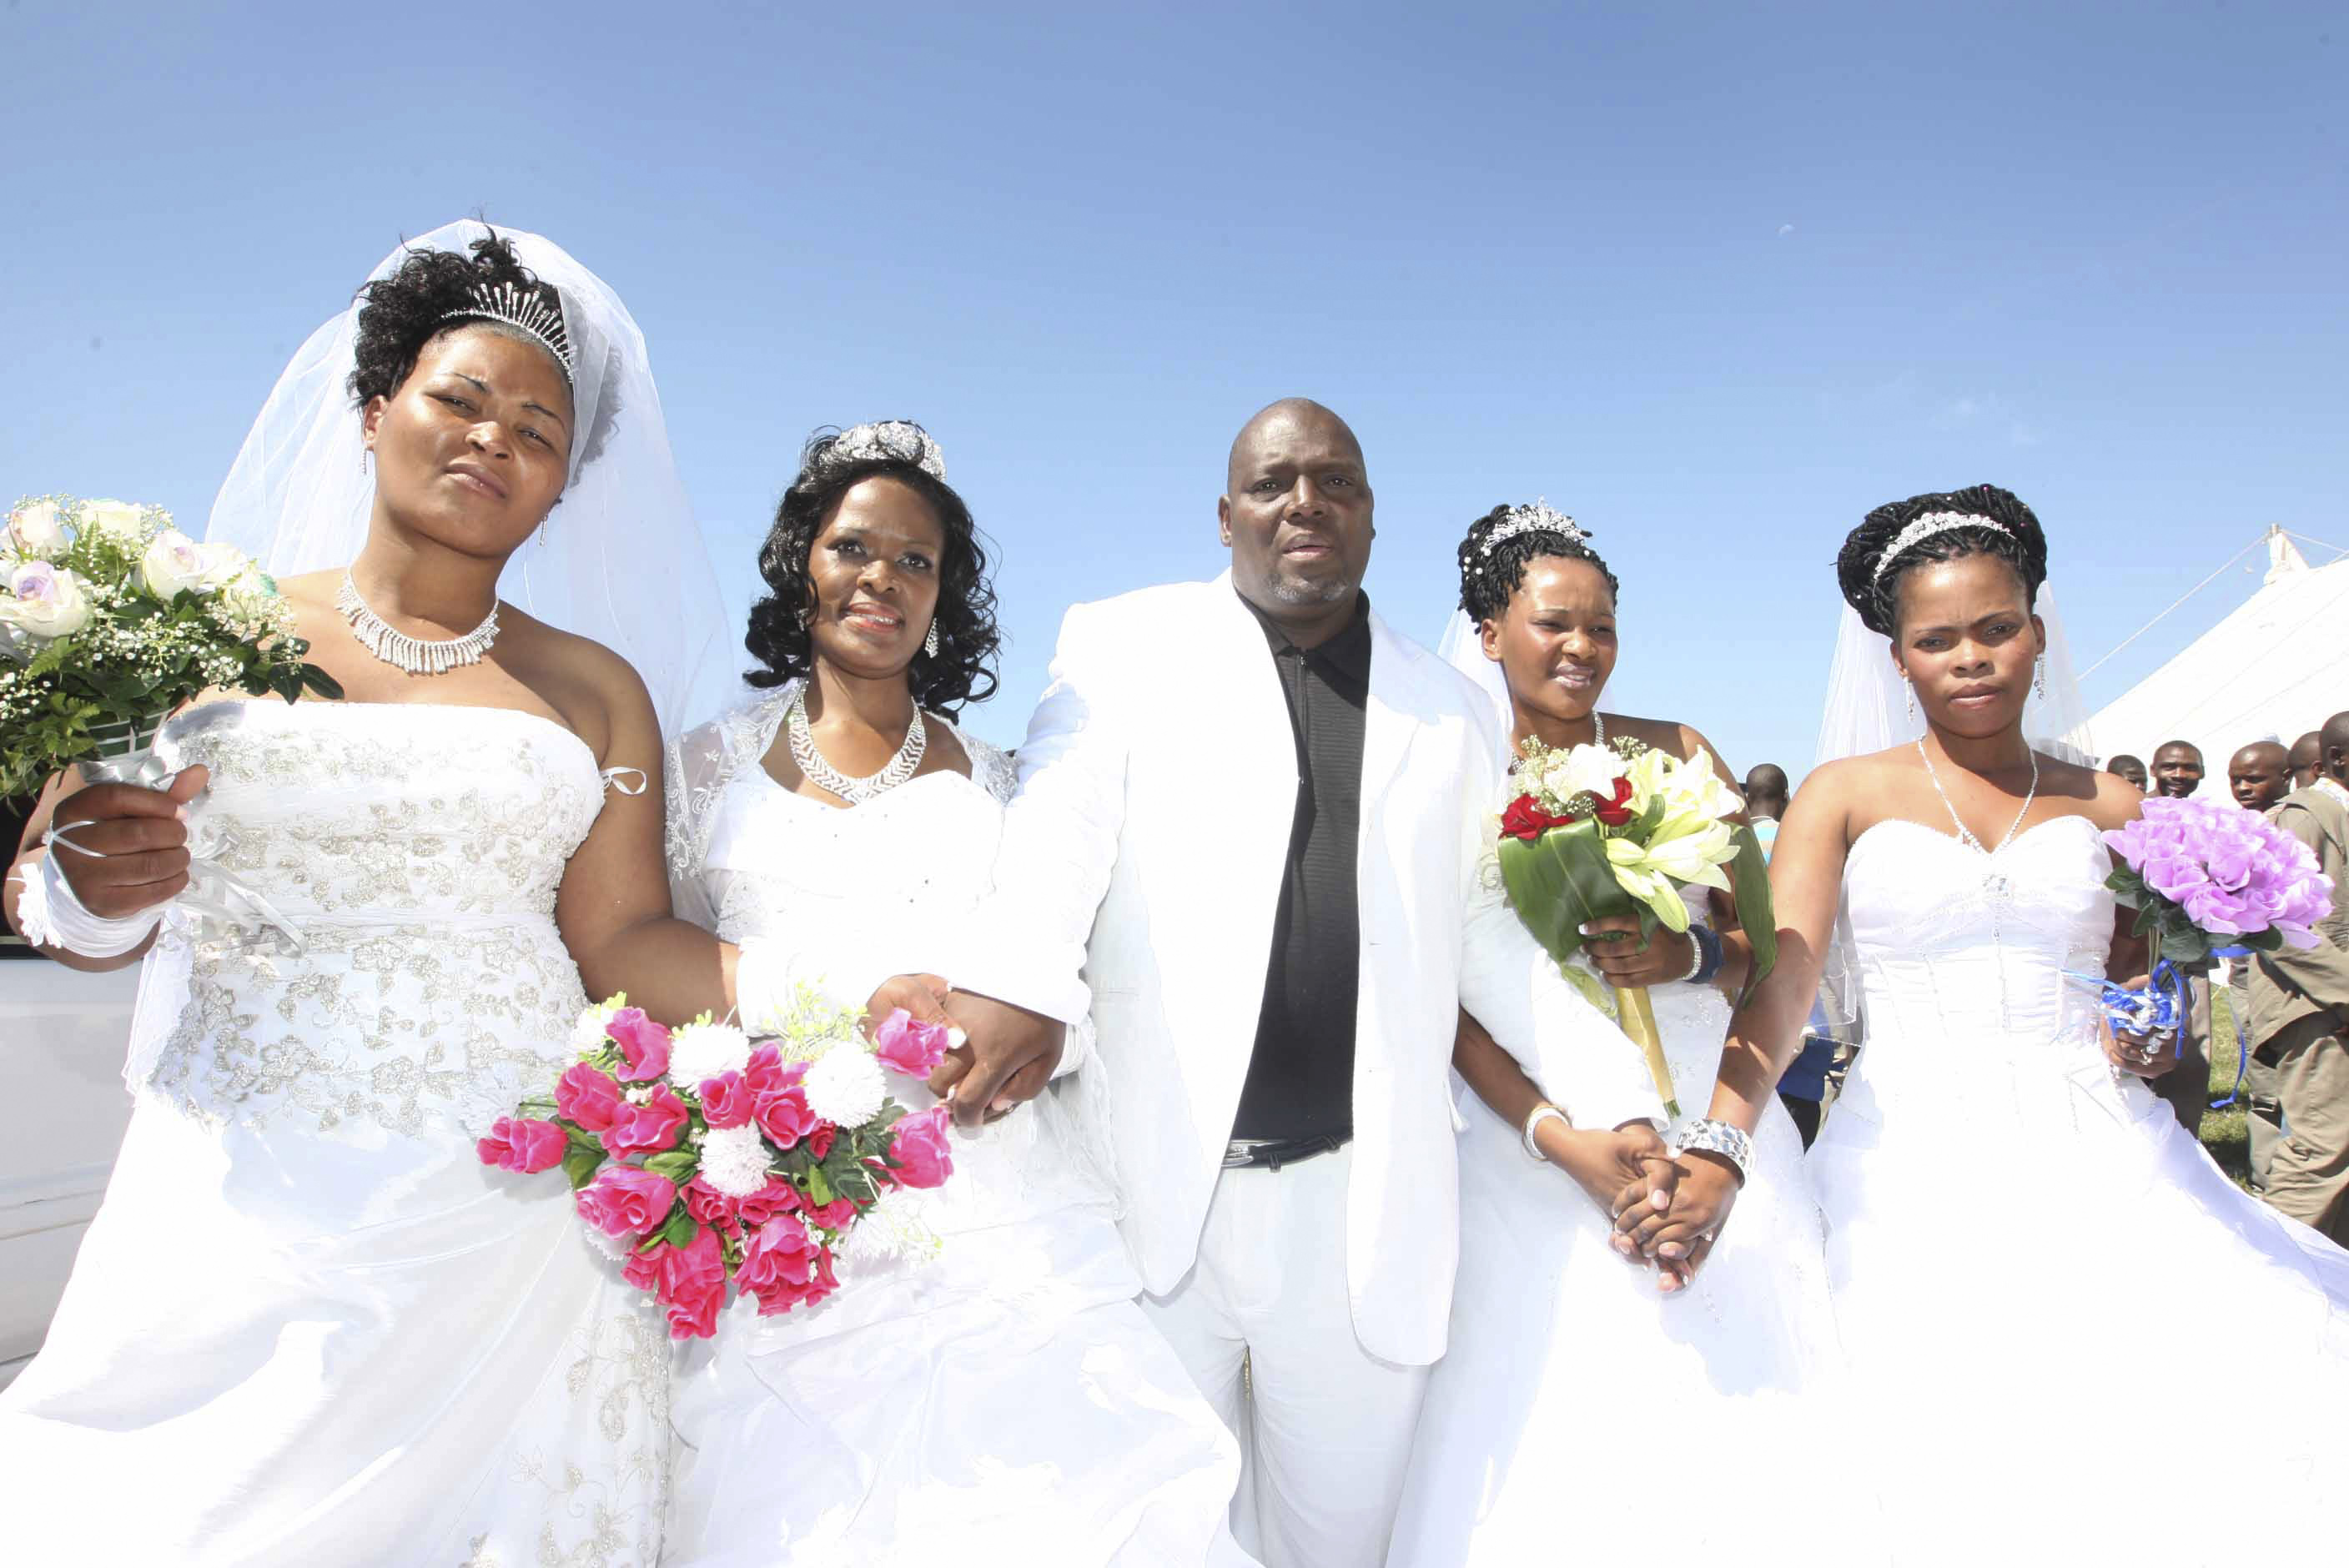 Här en sydafrikansk man med sina fyra fruar. Ziona Chana har några fler!